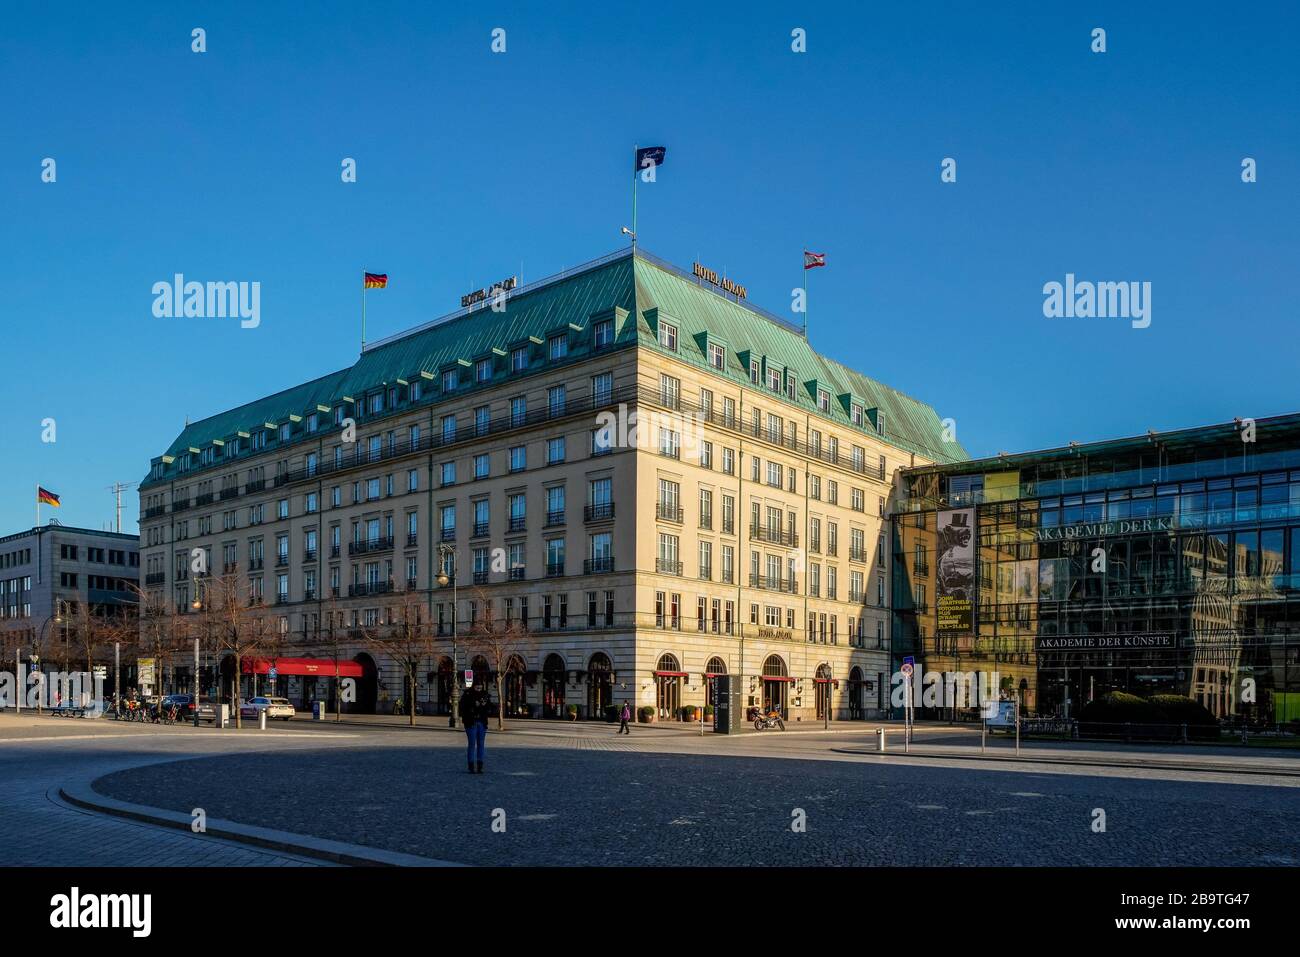 23.03.2020, l'hôtel Adlon Kempinski de Berlin Withte est l'un des hôtels les plus luxueux et les plus connus d'Allemagne. Lettrage sur le toit de l'hôtel. L'hôtel Adlon fait partie des "principaux hôtels du monde". En raison de la crise corona, cette maison doit également cesser ses opérations pour le moment. | utilisation dans le monde entier Banque D'Images